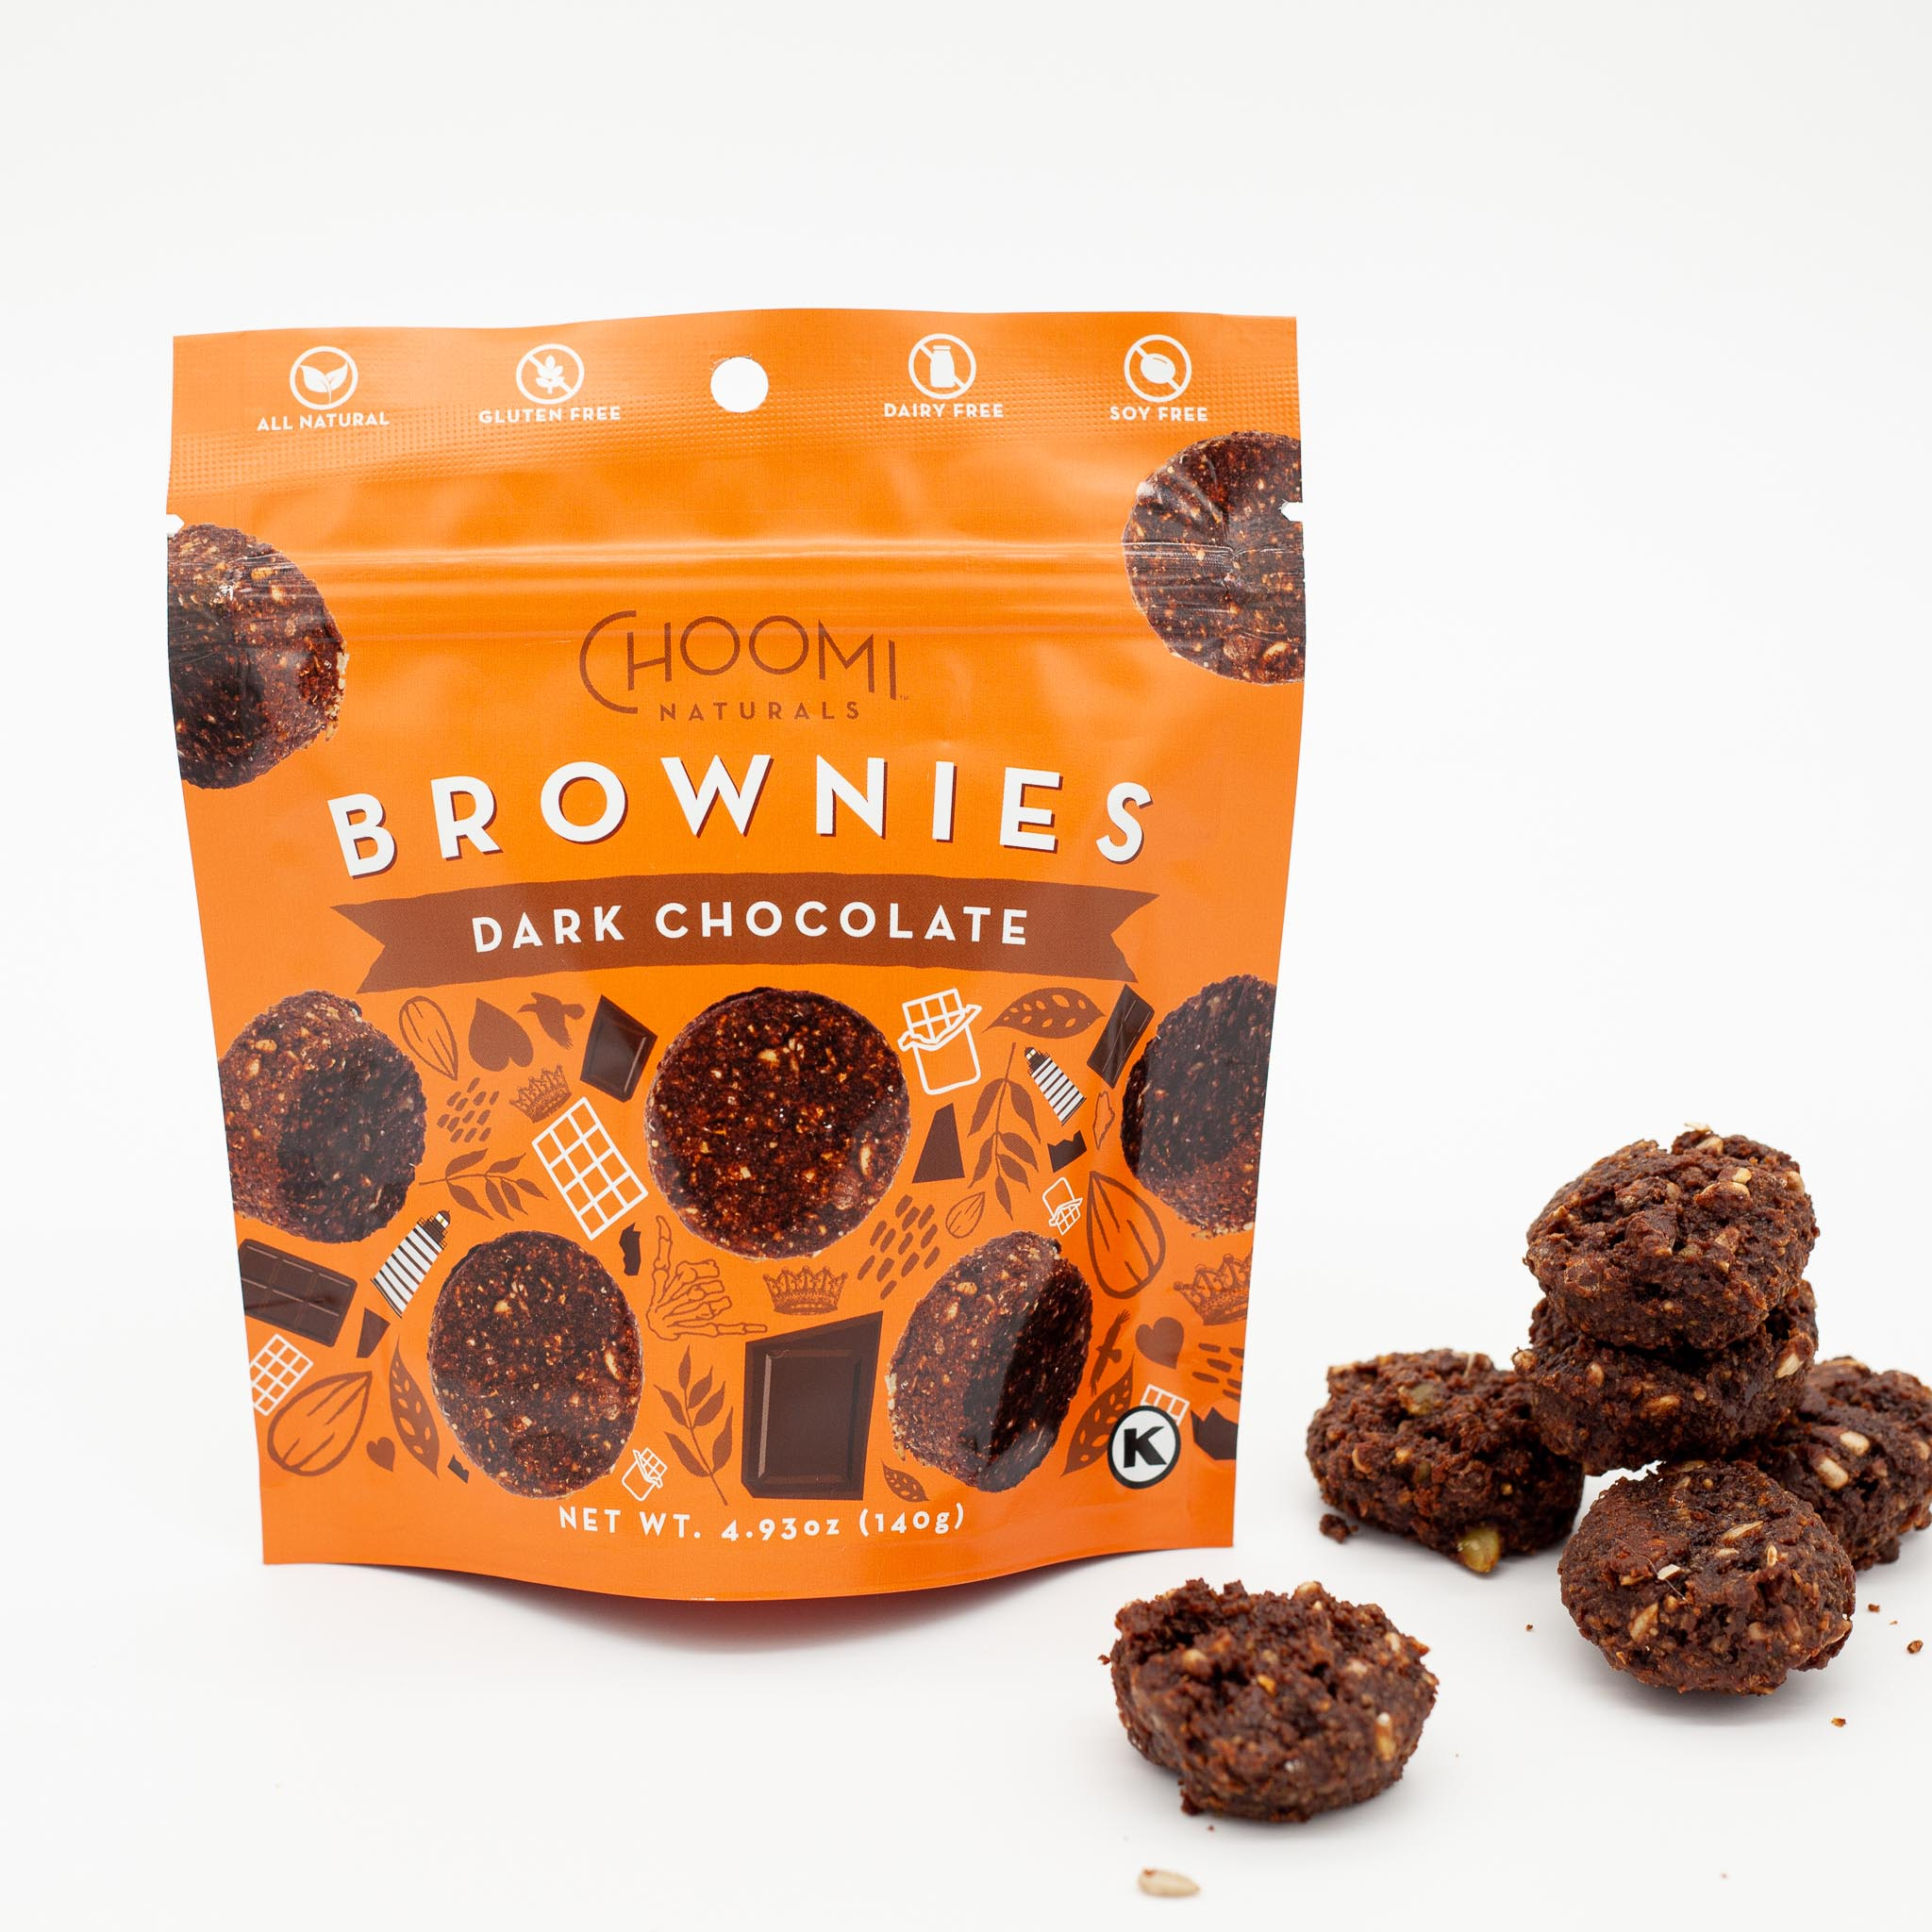 Choomi Cookies Brownies Dark Chocolate 6 units per case 4.9 oz